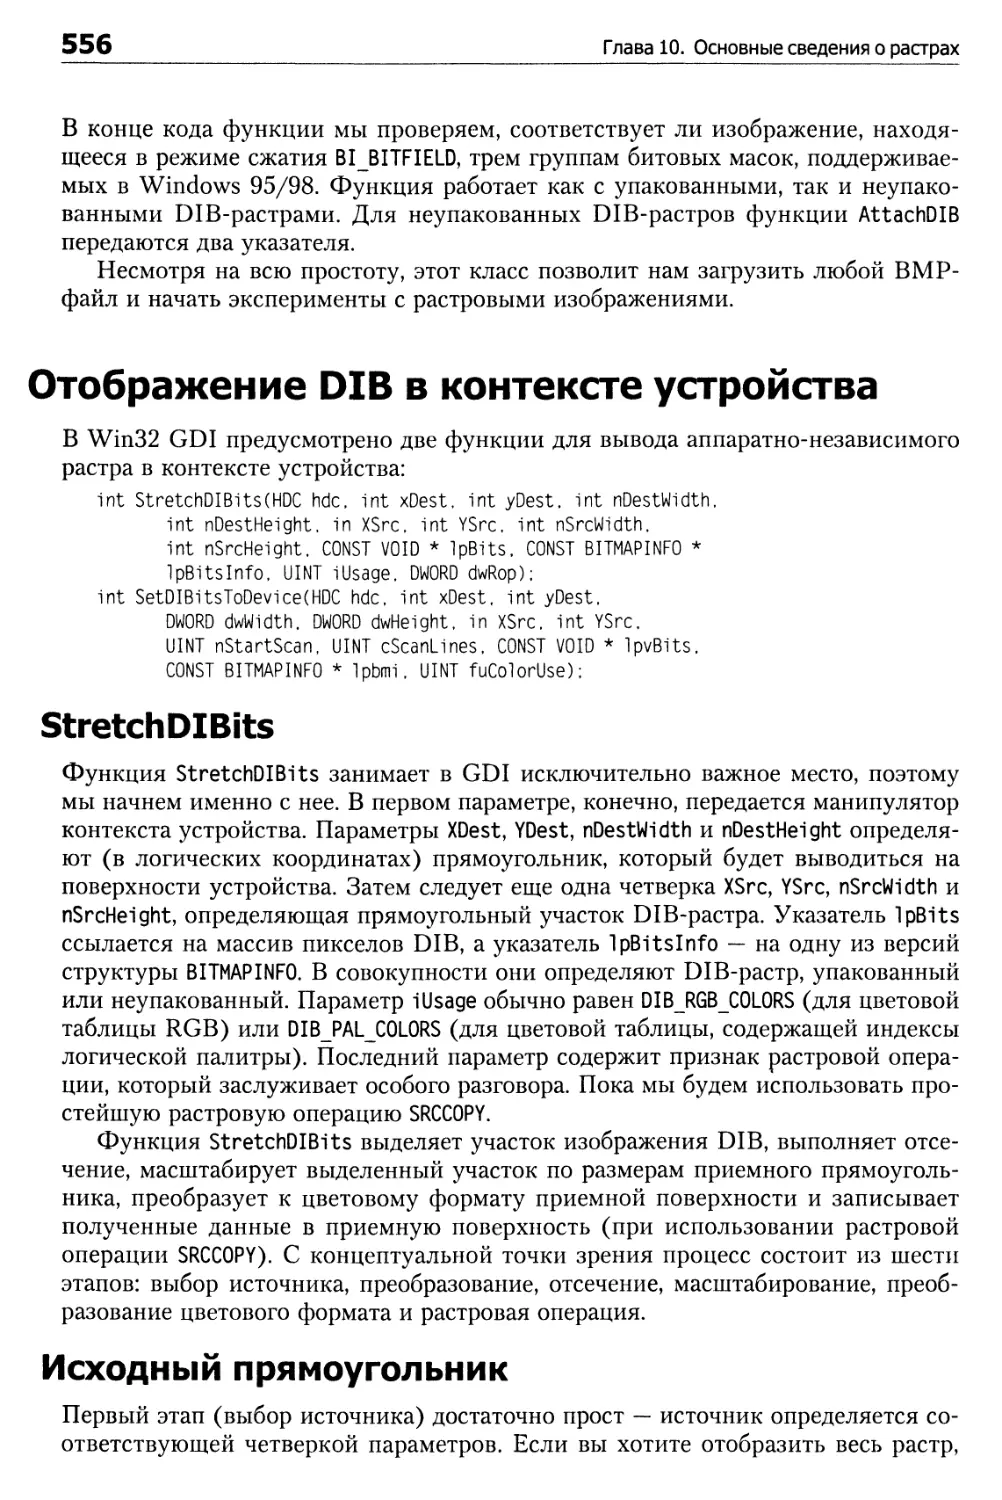 Отображение DIB в контексте устройства
Исходный прямоугольник